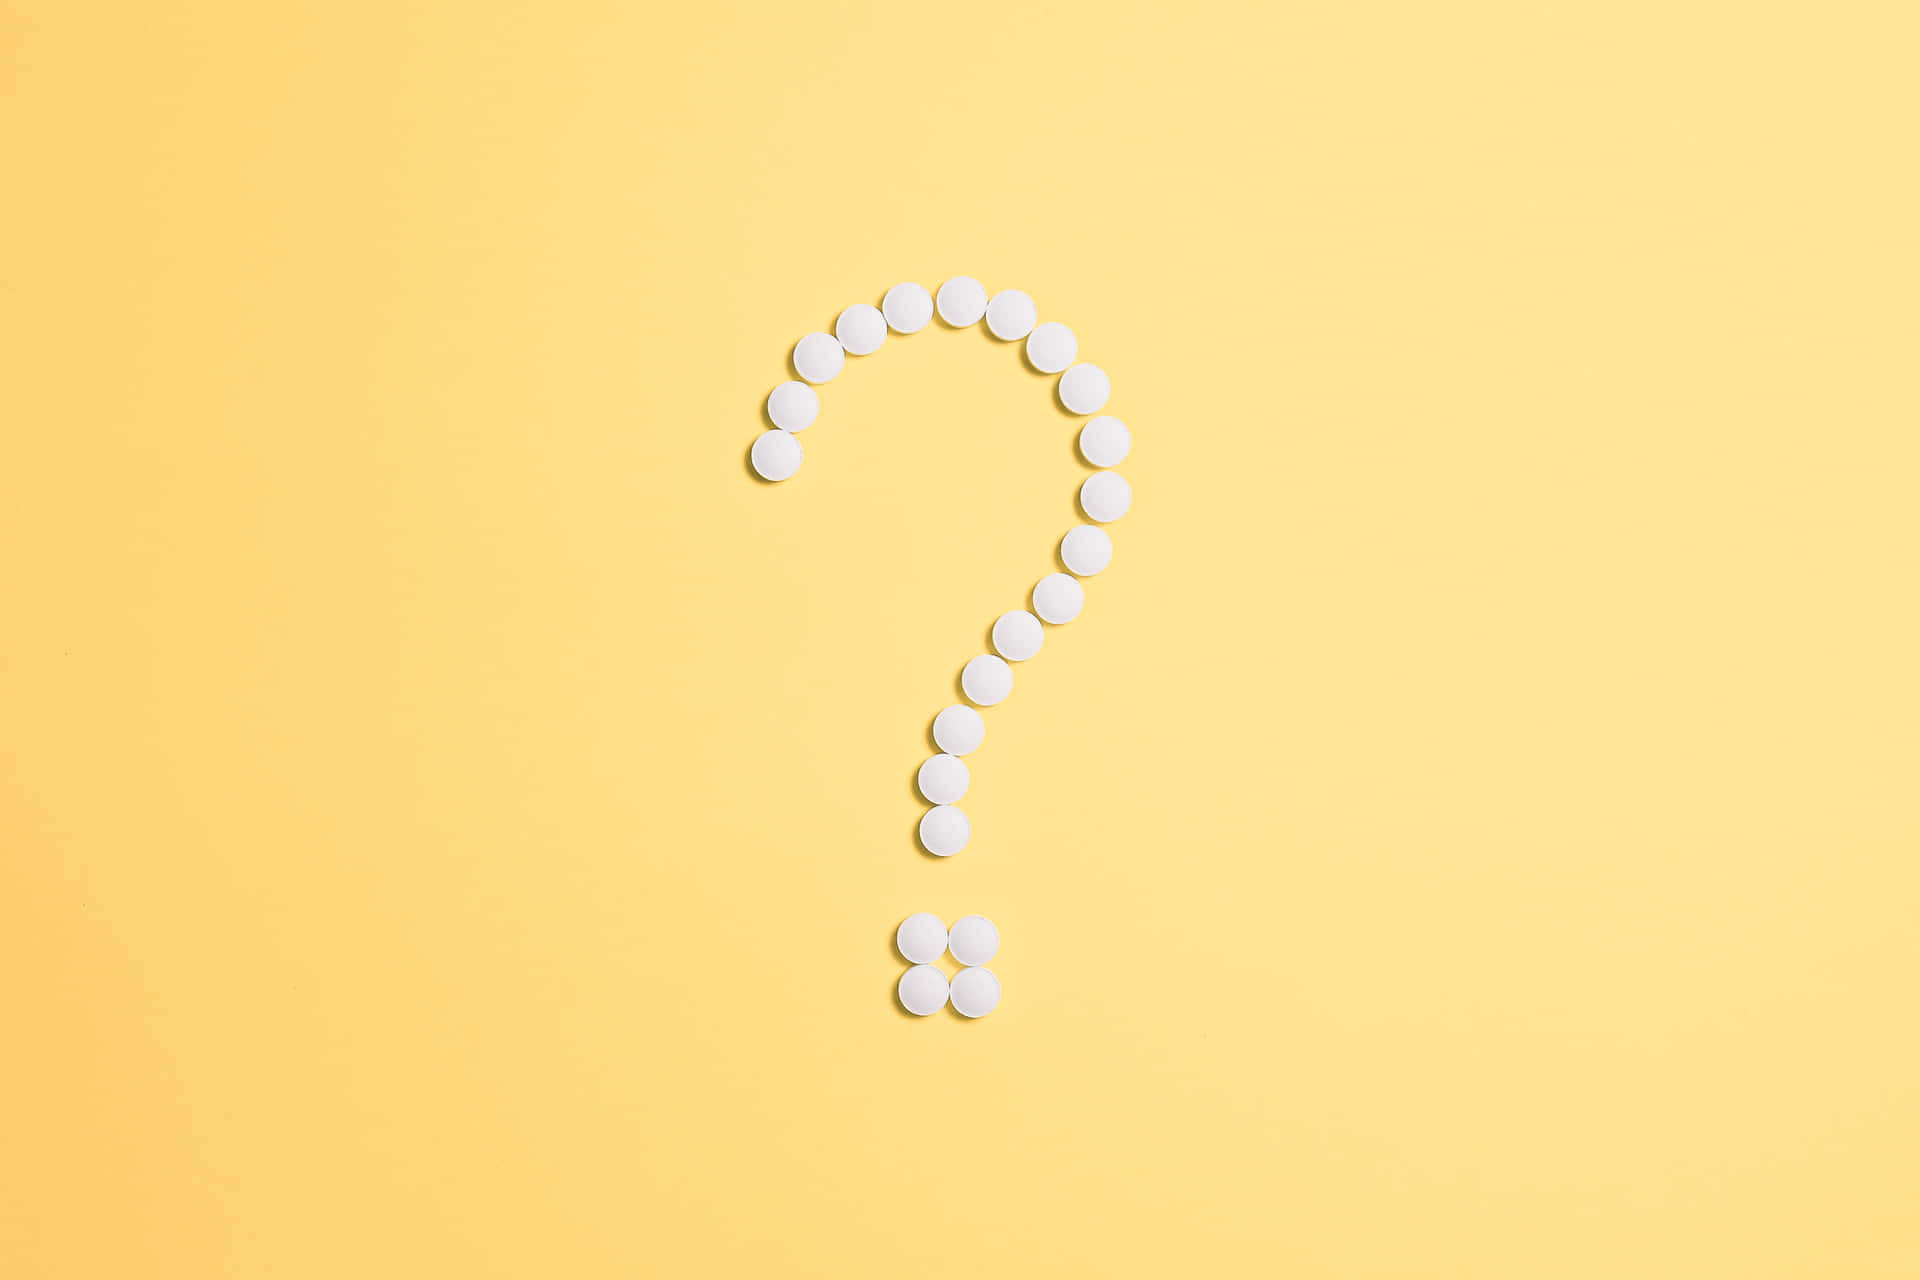 Unpunto Interrogativo Fatto Di Pillole Su Uno Sfondo Giallo